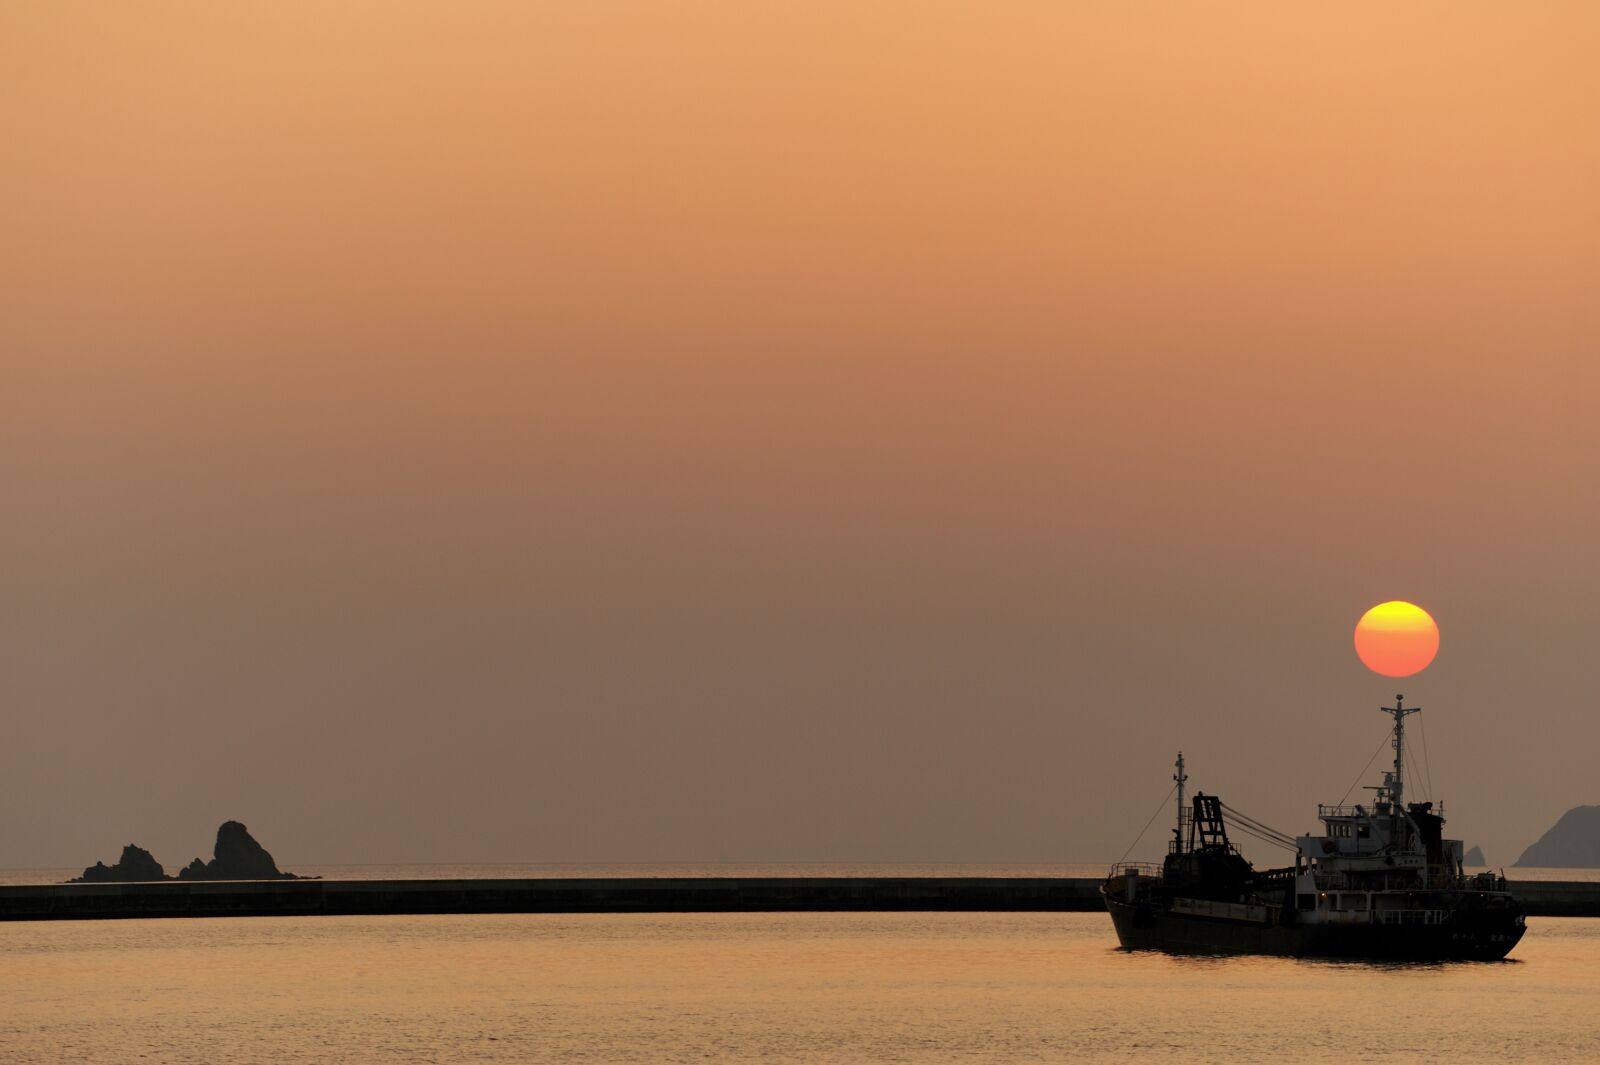 Nikon D700 sample photo. Sunset, ship, natural photography